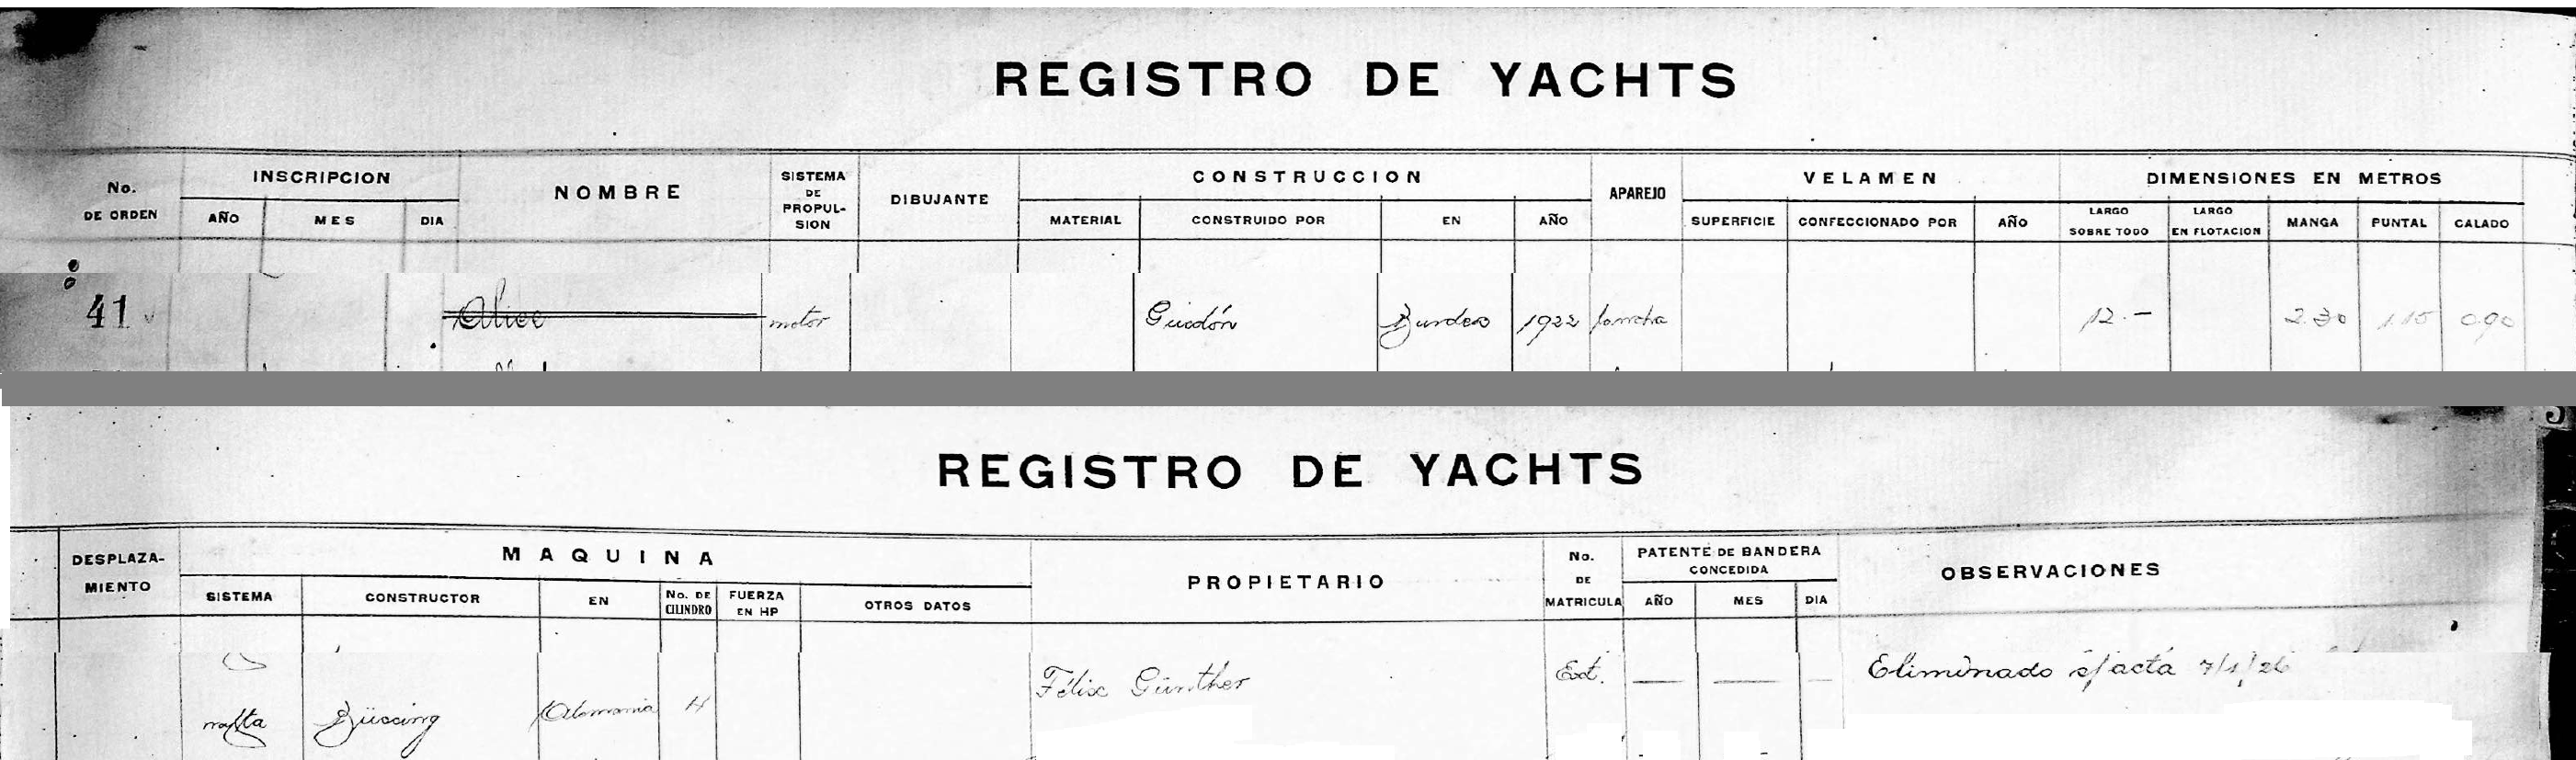 Registre des yachts du Yacht Club Argentino de Buenos Aires, photographie Carlos Solari